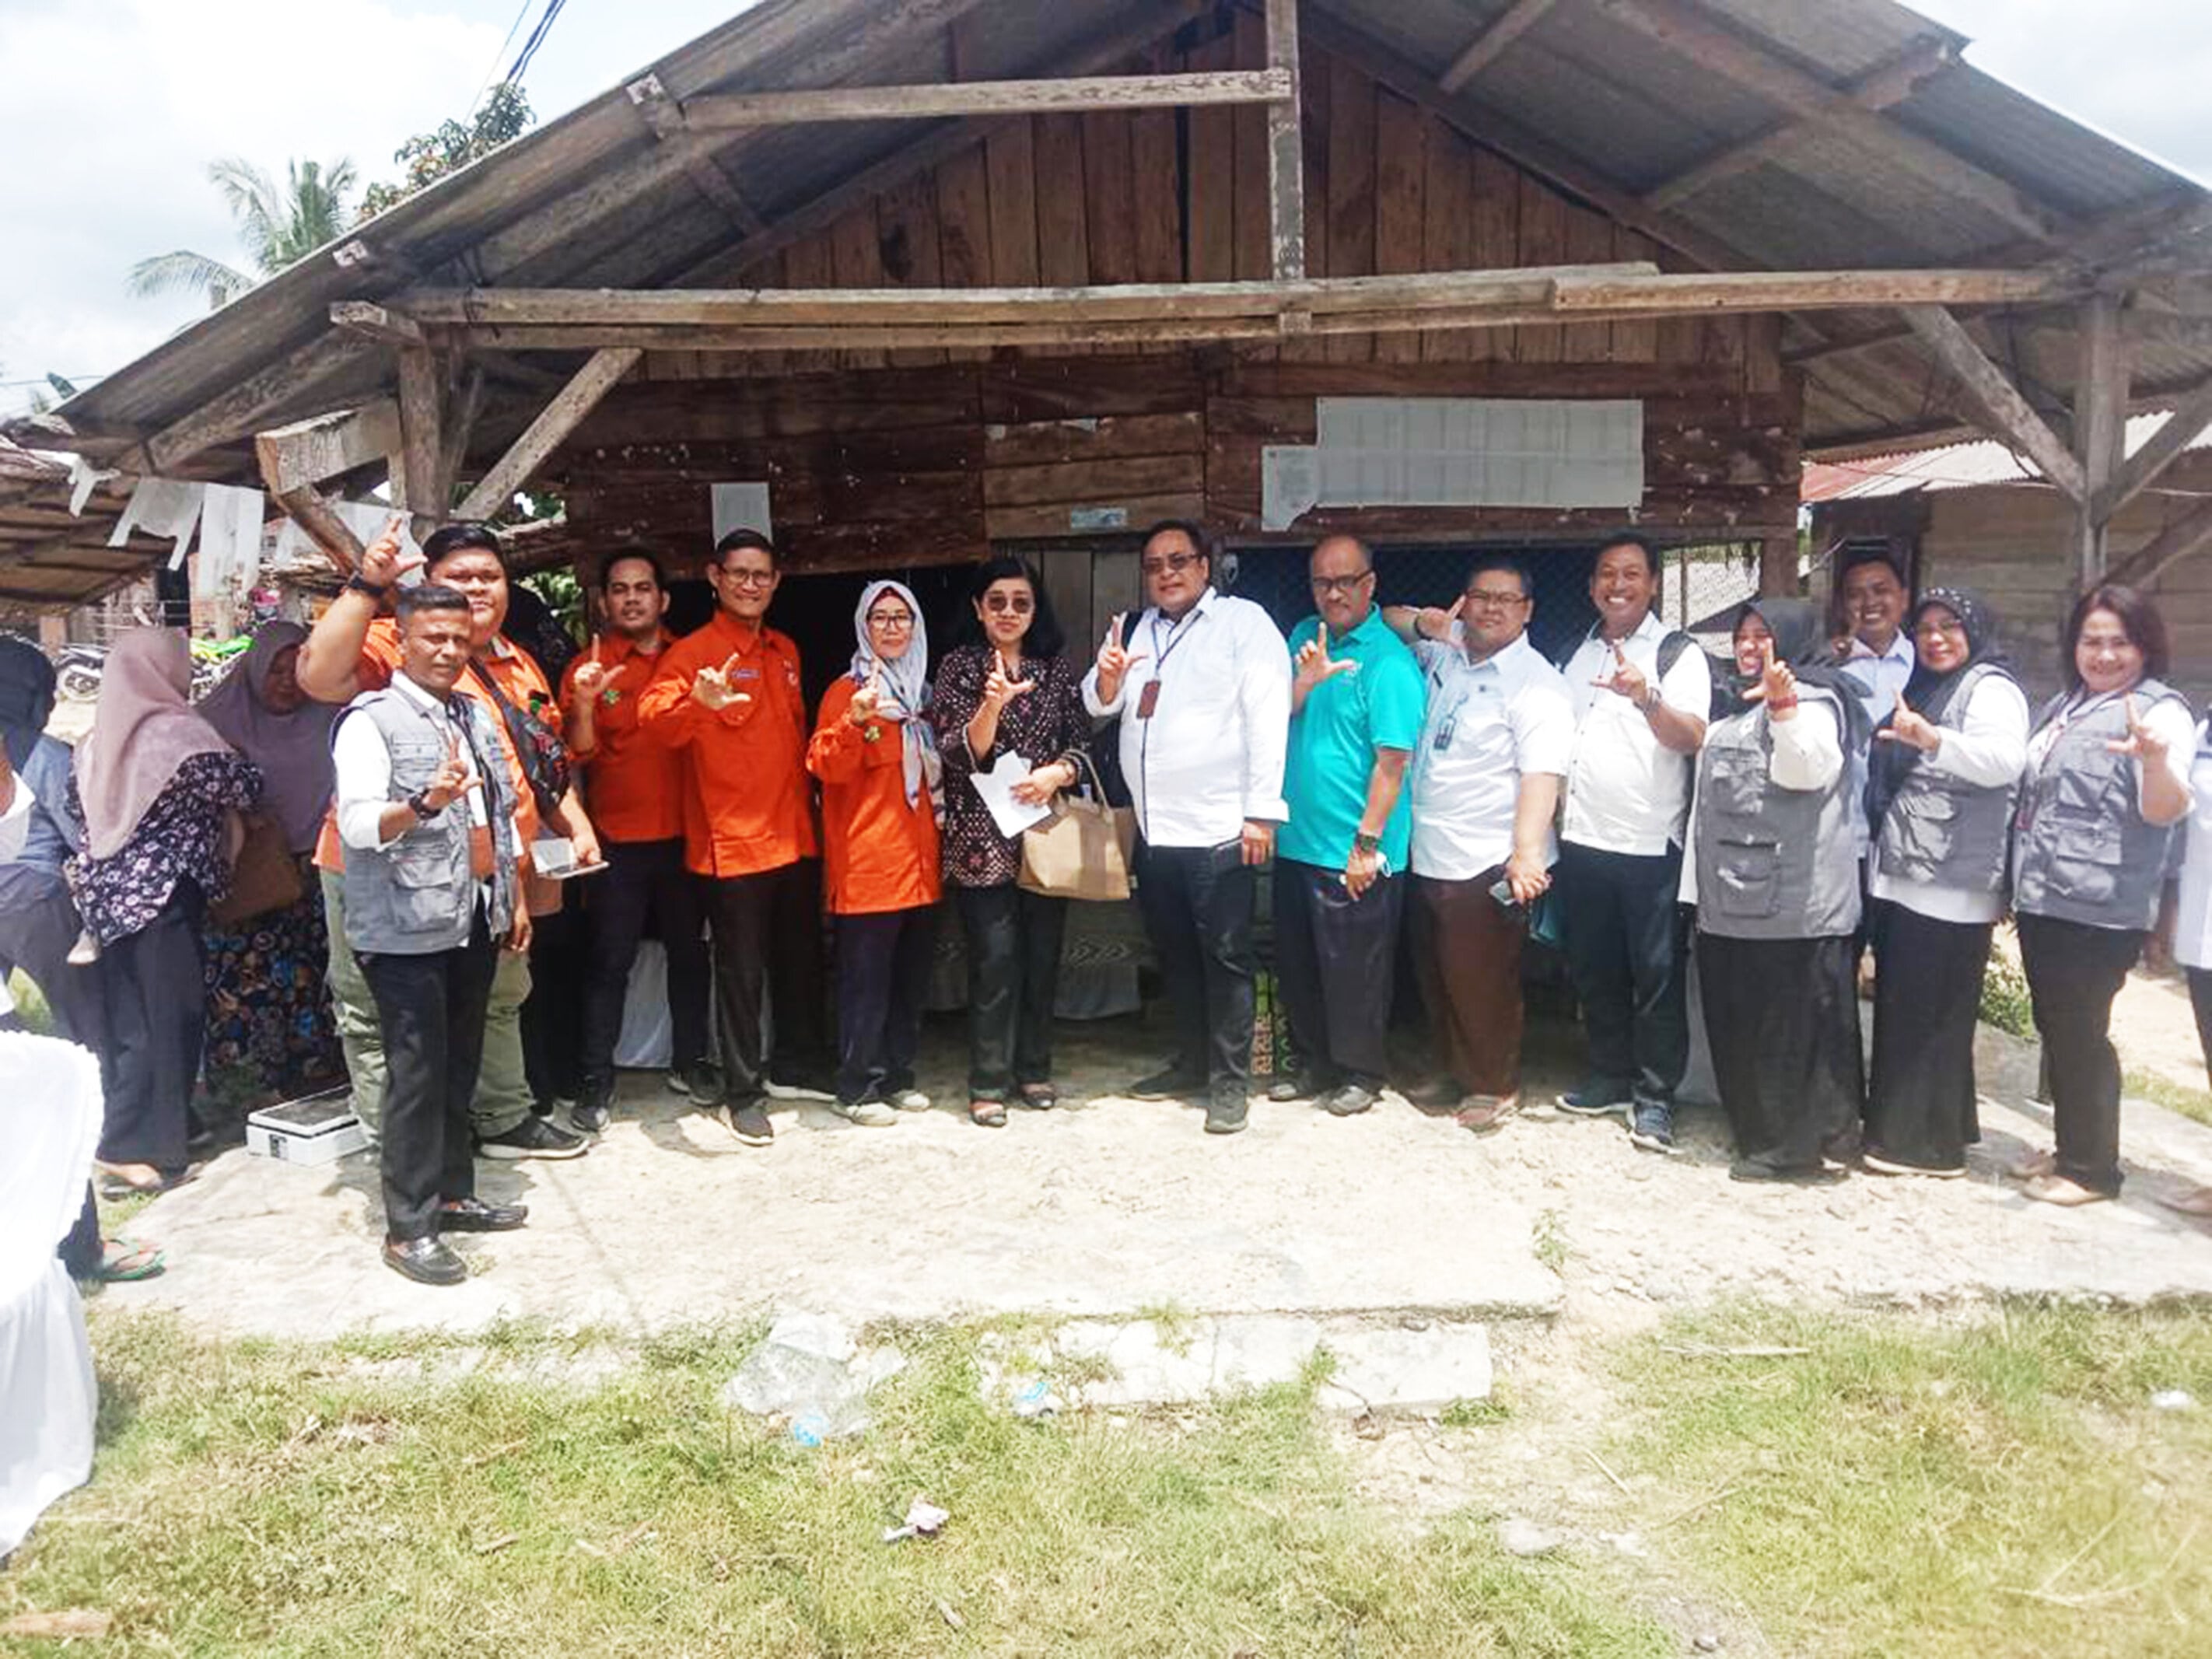 Skrining PTM (Penyakit Tidak Menular) Pada Kegiatan Germas di Kecamatan Pematang Jaya 23 Okt 